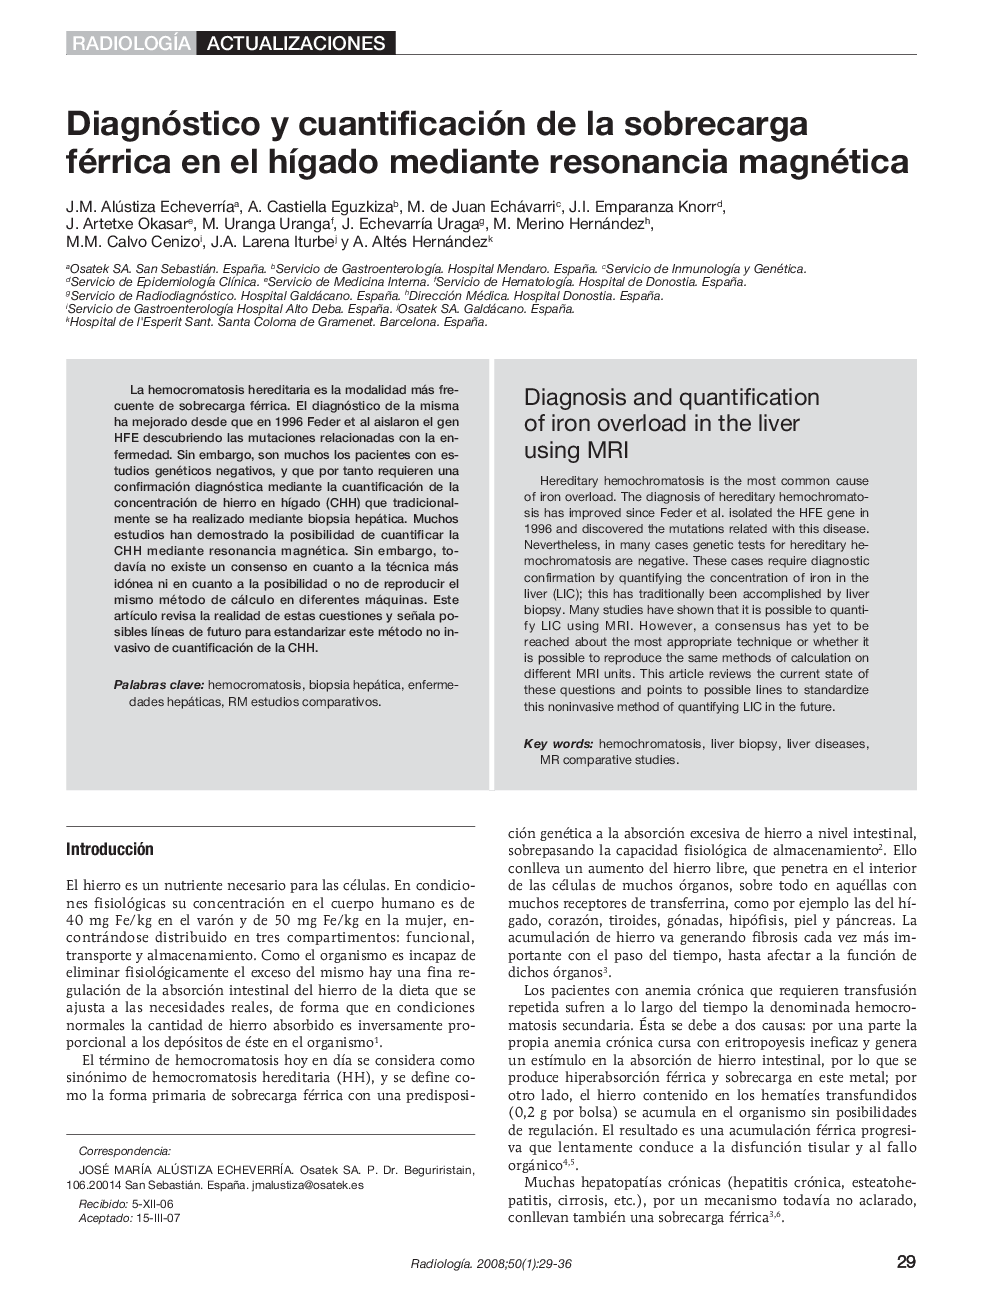 Diagnóstico y cuantificación de la sobrecarga férrica en el hígado mediante resonancia magnética